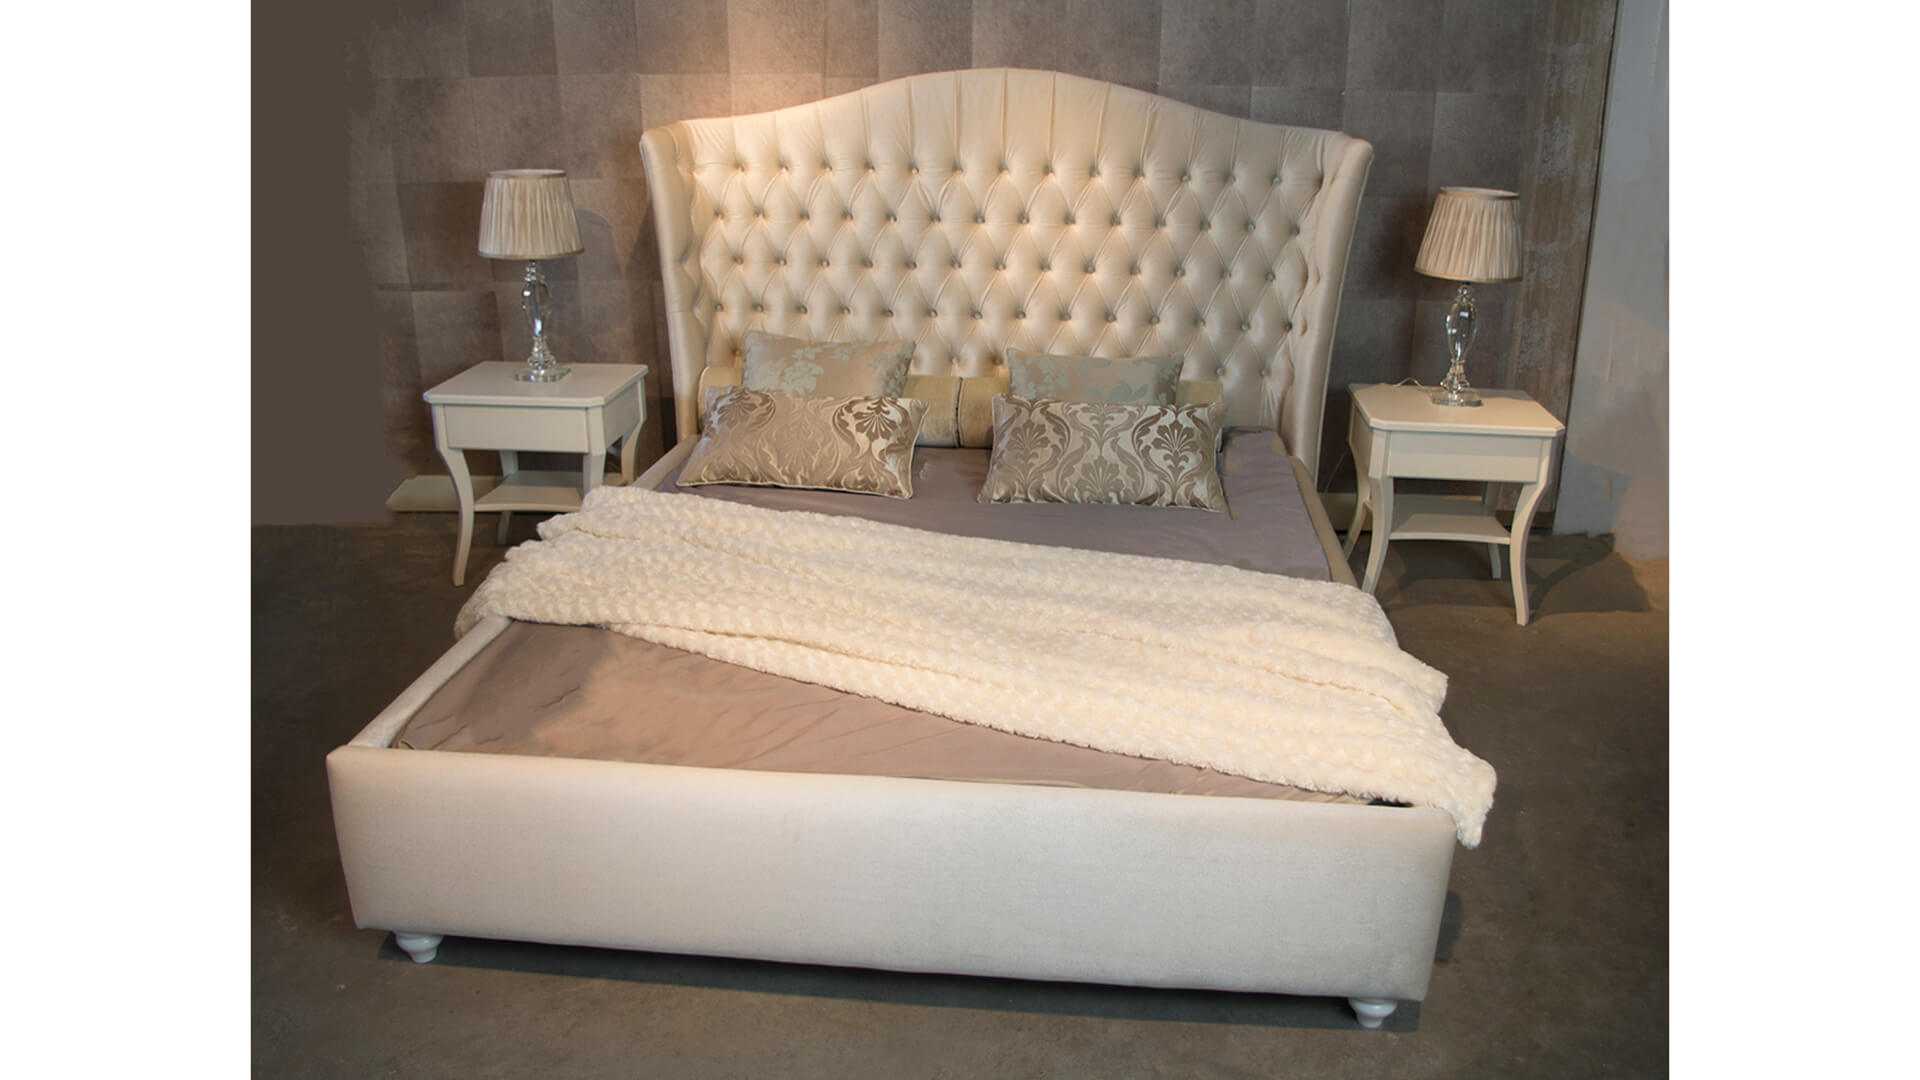 Nowoczesne łóżko tapicerowane, meble do sypialni, na wymiar, dobrodzień, katowice, gliwice, łózko na wymiar